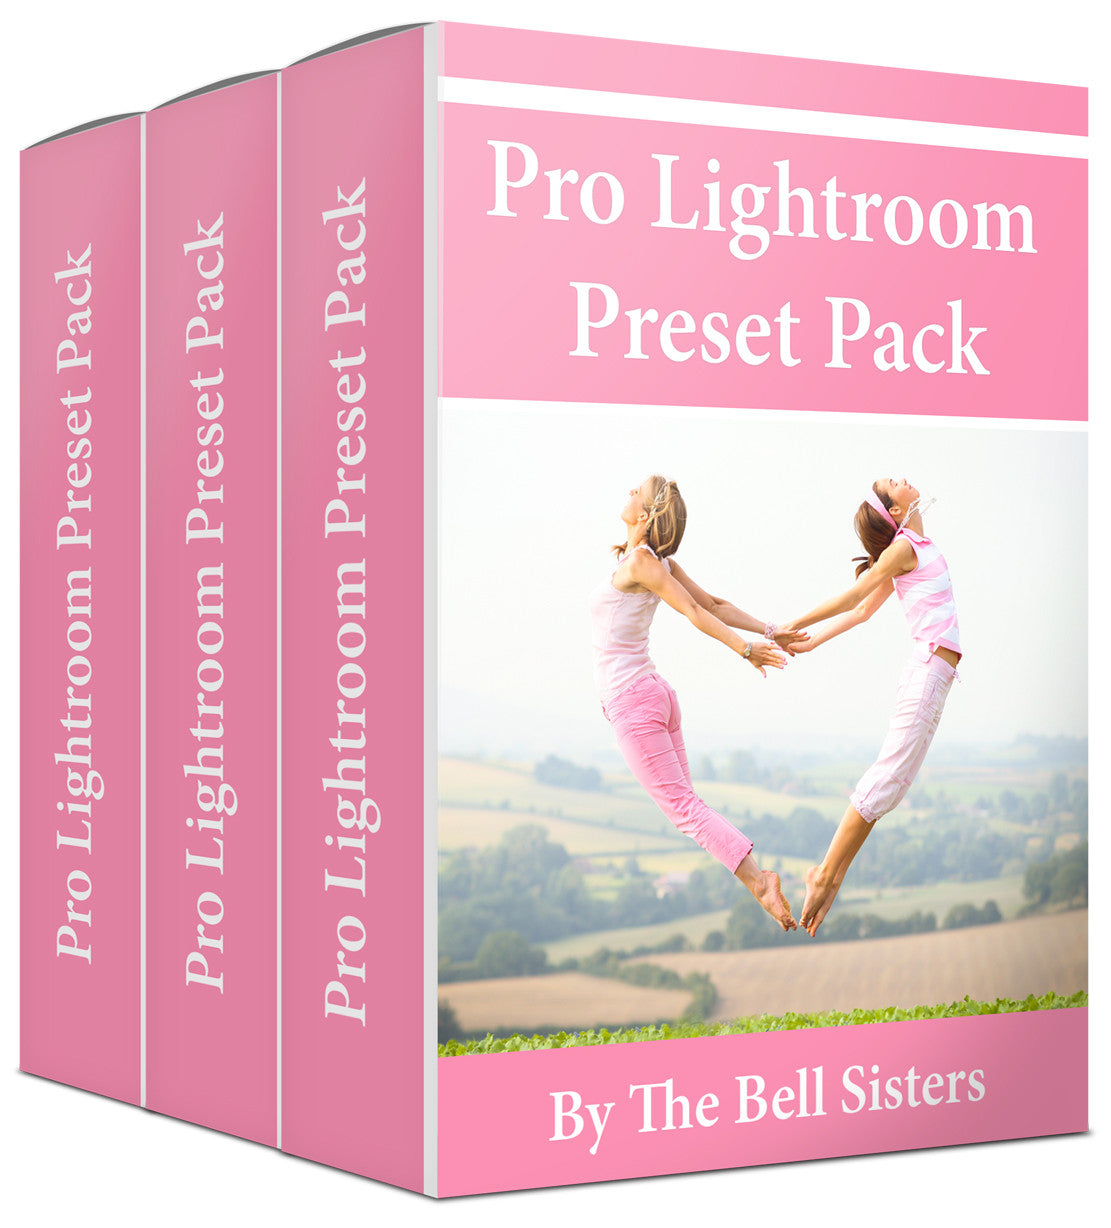 Pro Lightroom Preset Pack